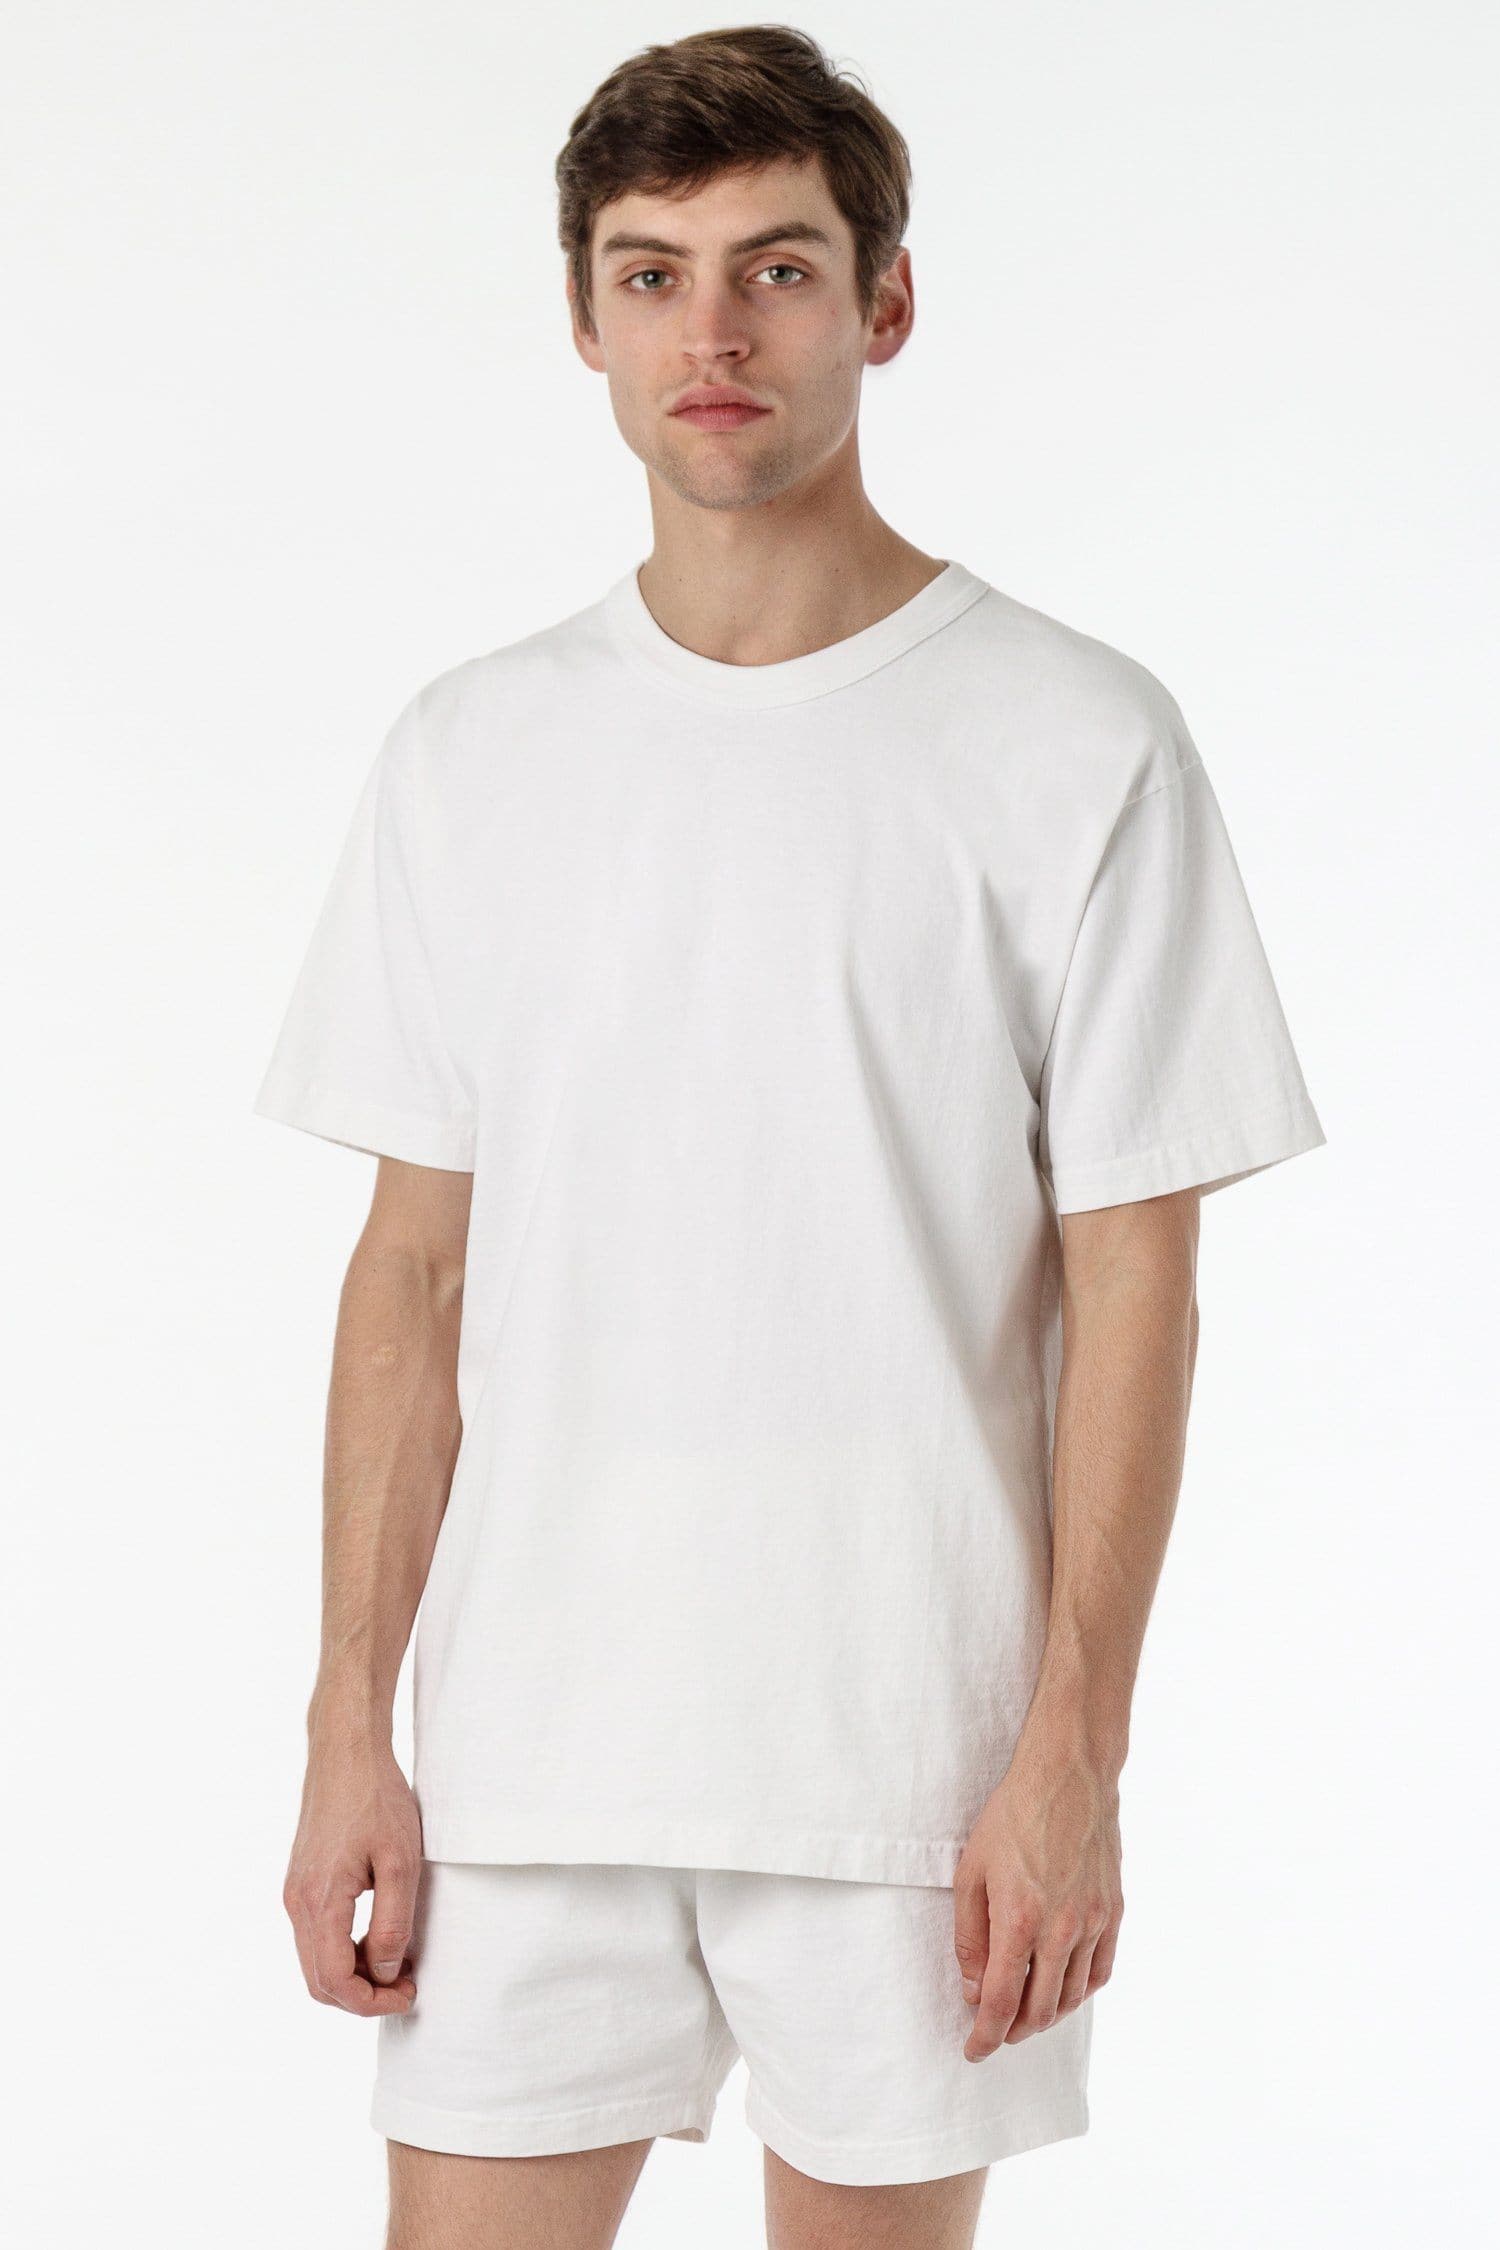 1203GD - Short Sleeve Binding Garment Dye T-Shirt